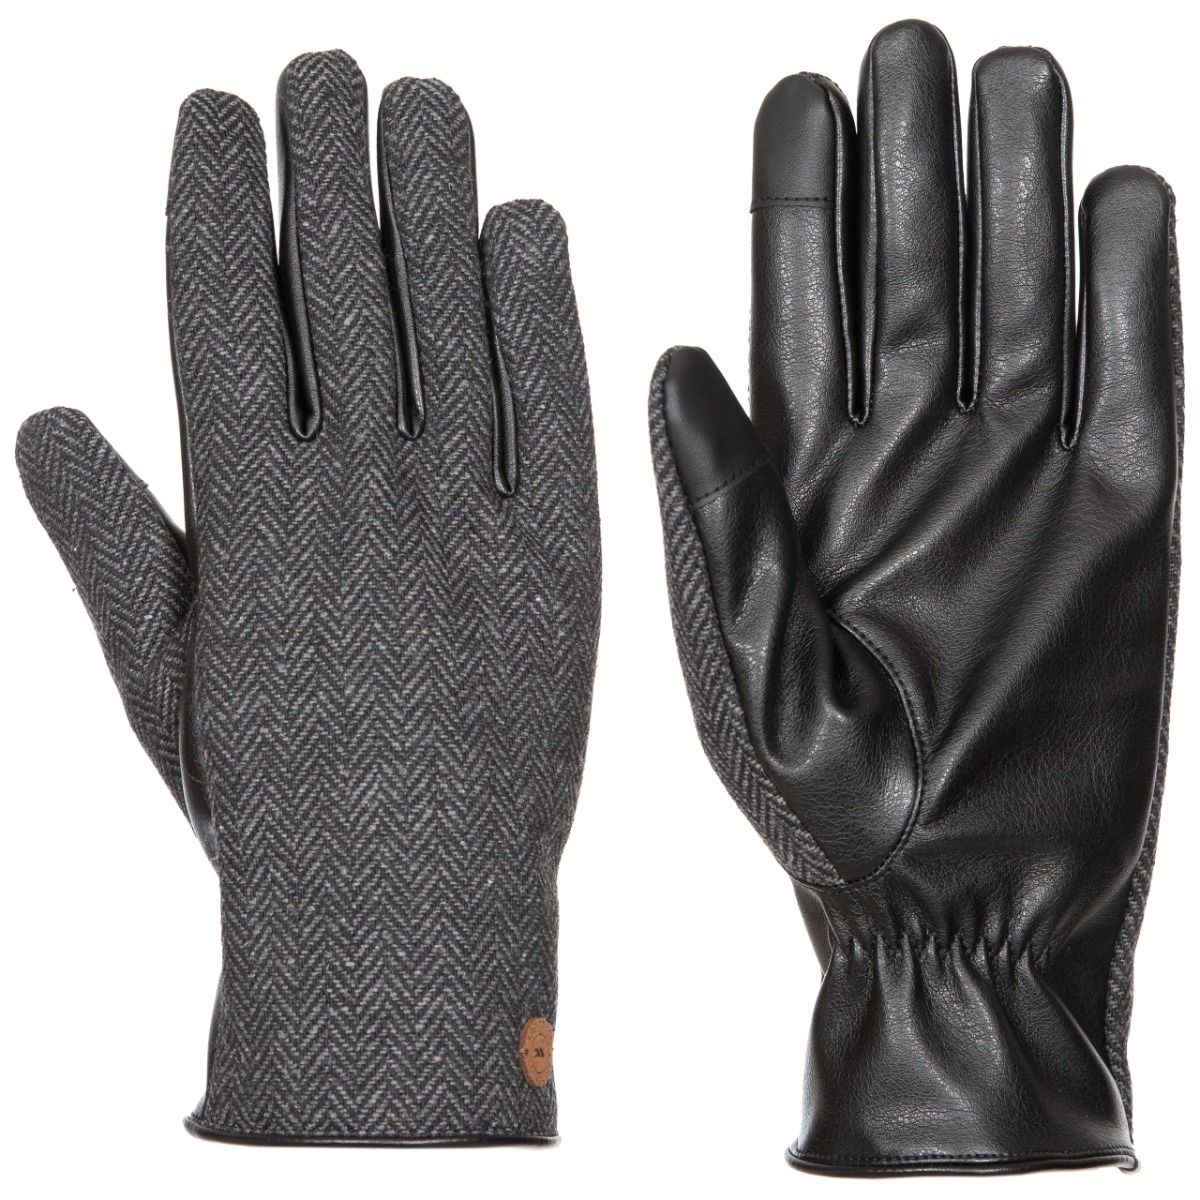 Kita Unisex Adult Gloves